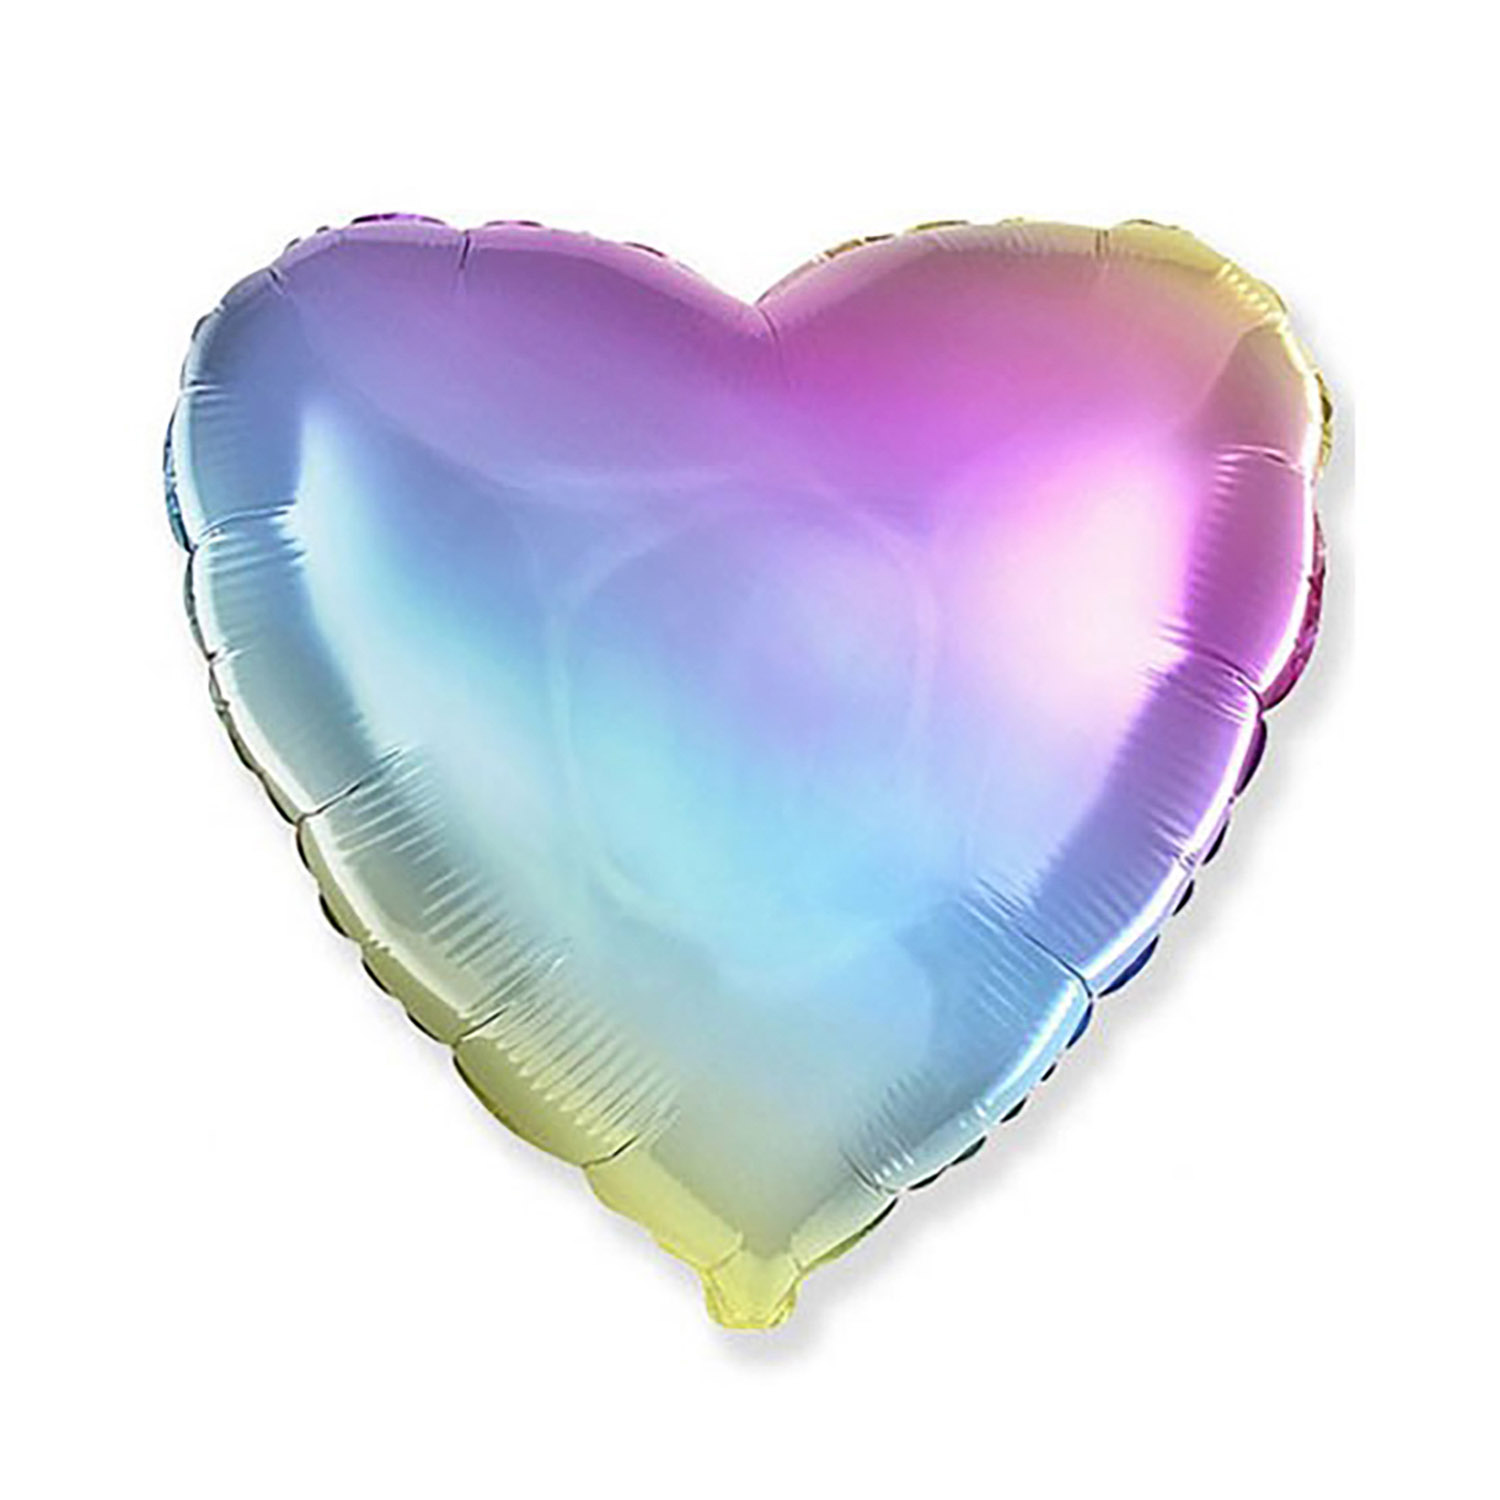 Folienballon Rainbow - Herz